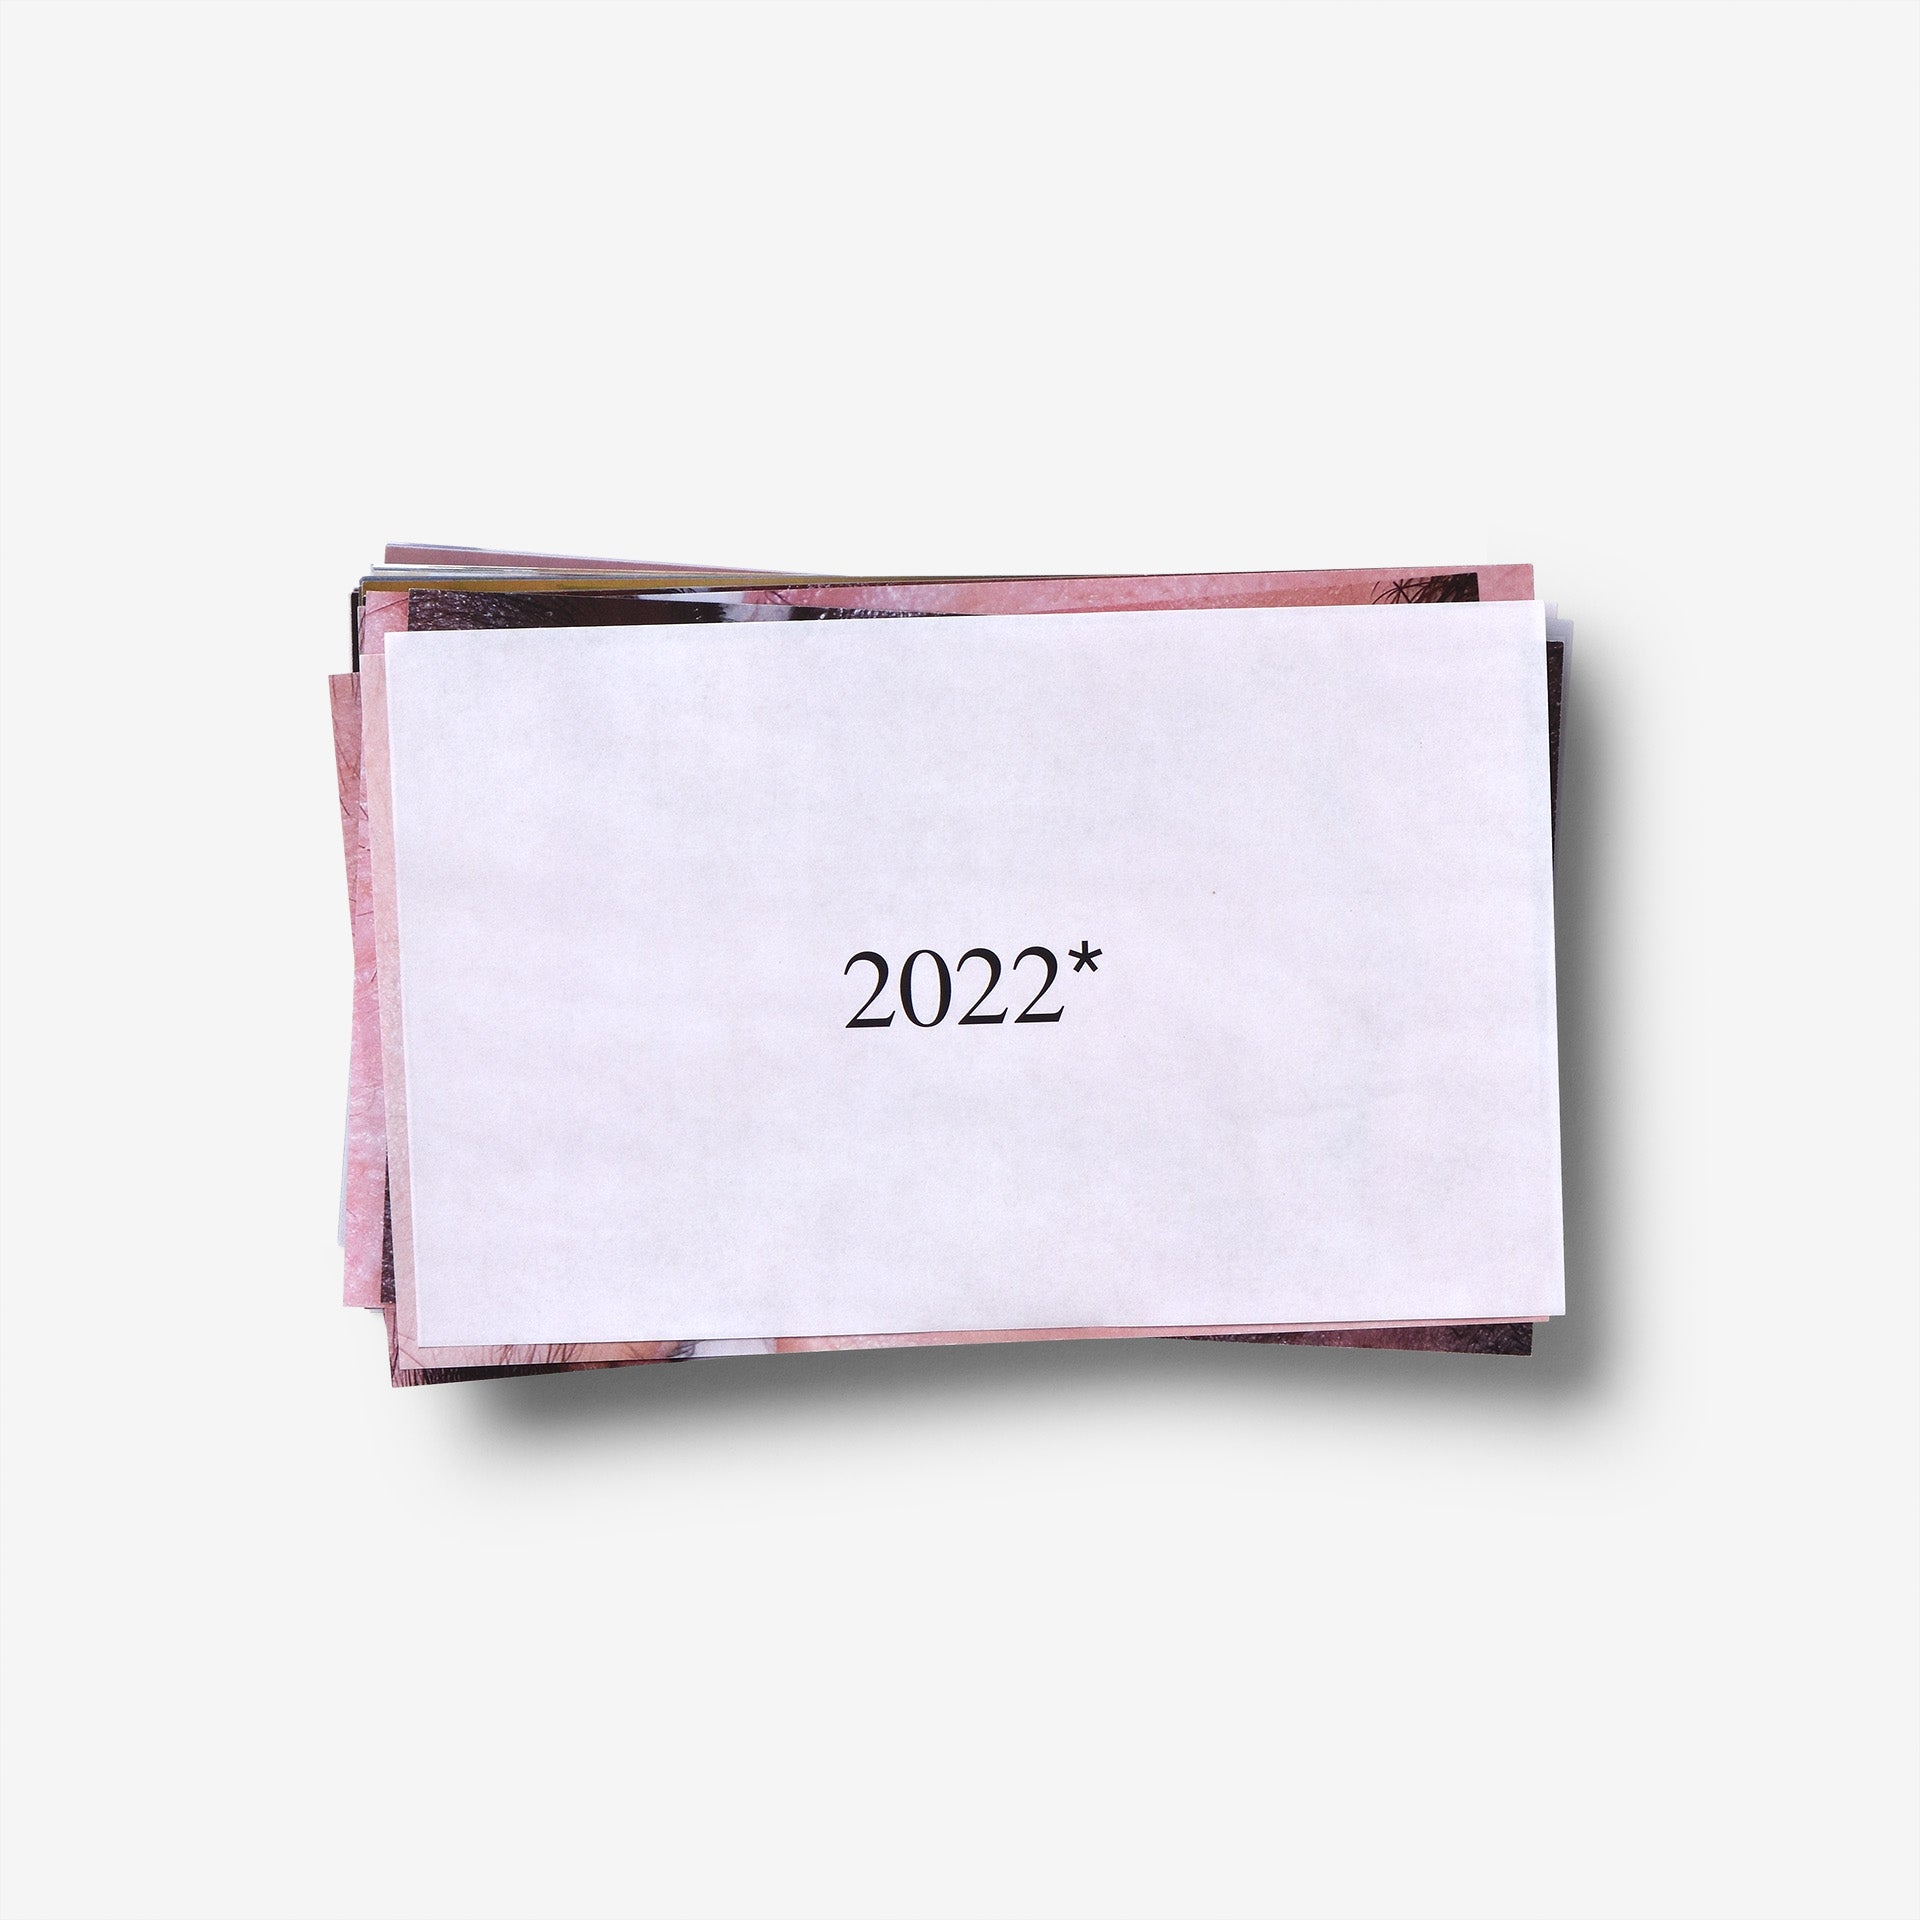 2022* Magazine - Hieu Duong Cover